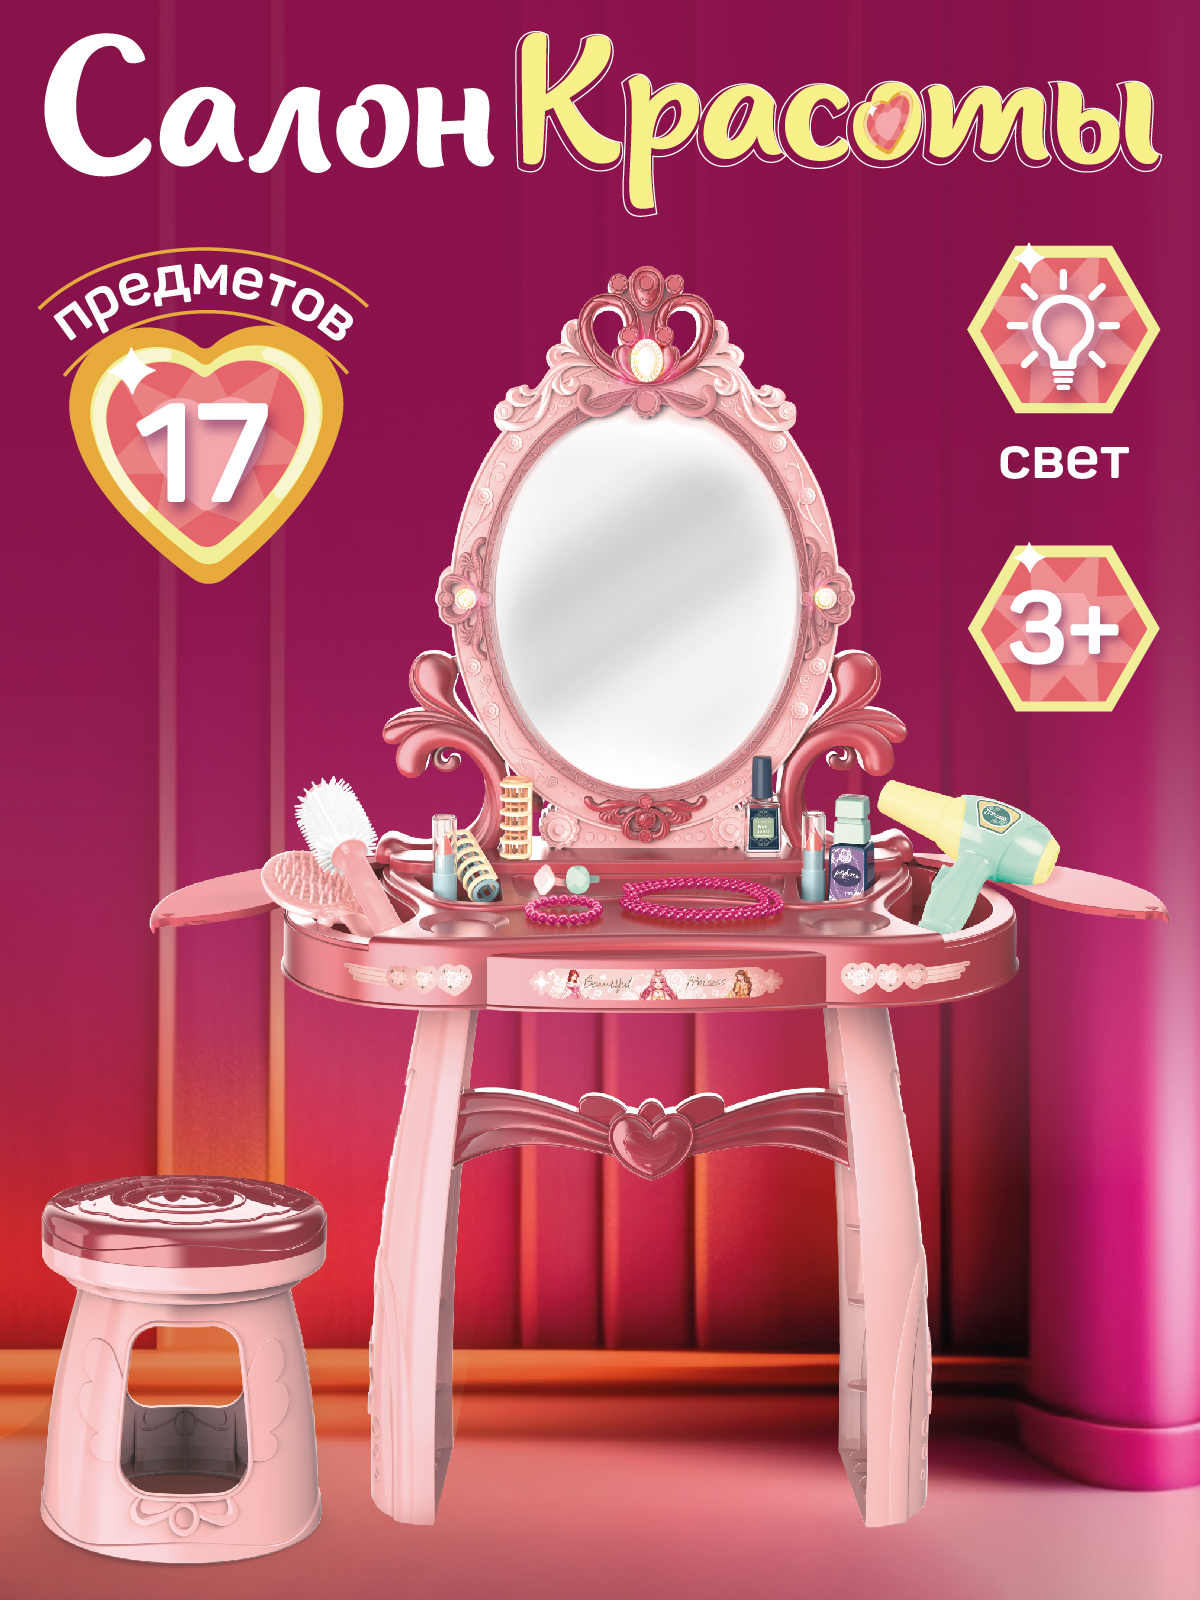 Игровой набор Amore Bello Трюмо со стульчиком, розовый, аксессуары, свет, звук, JB0208394